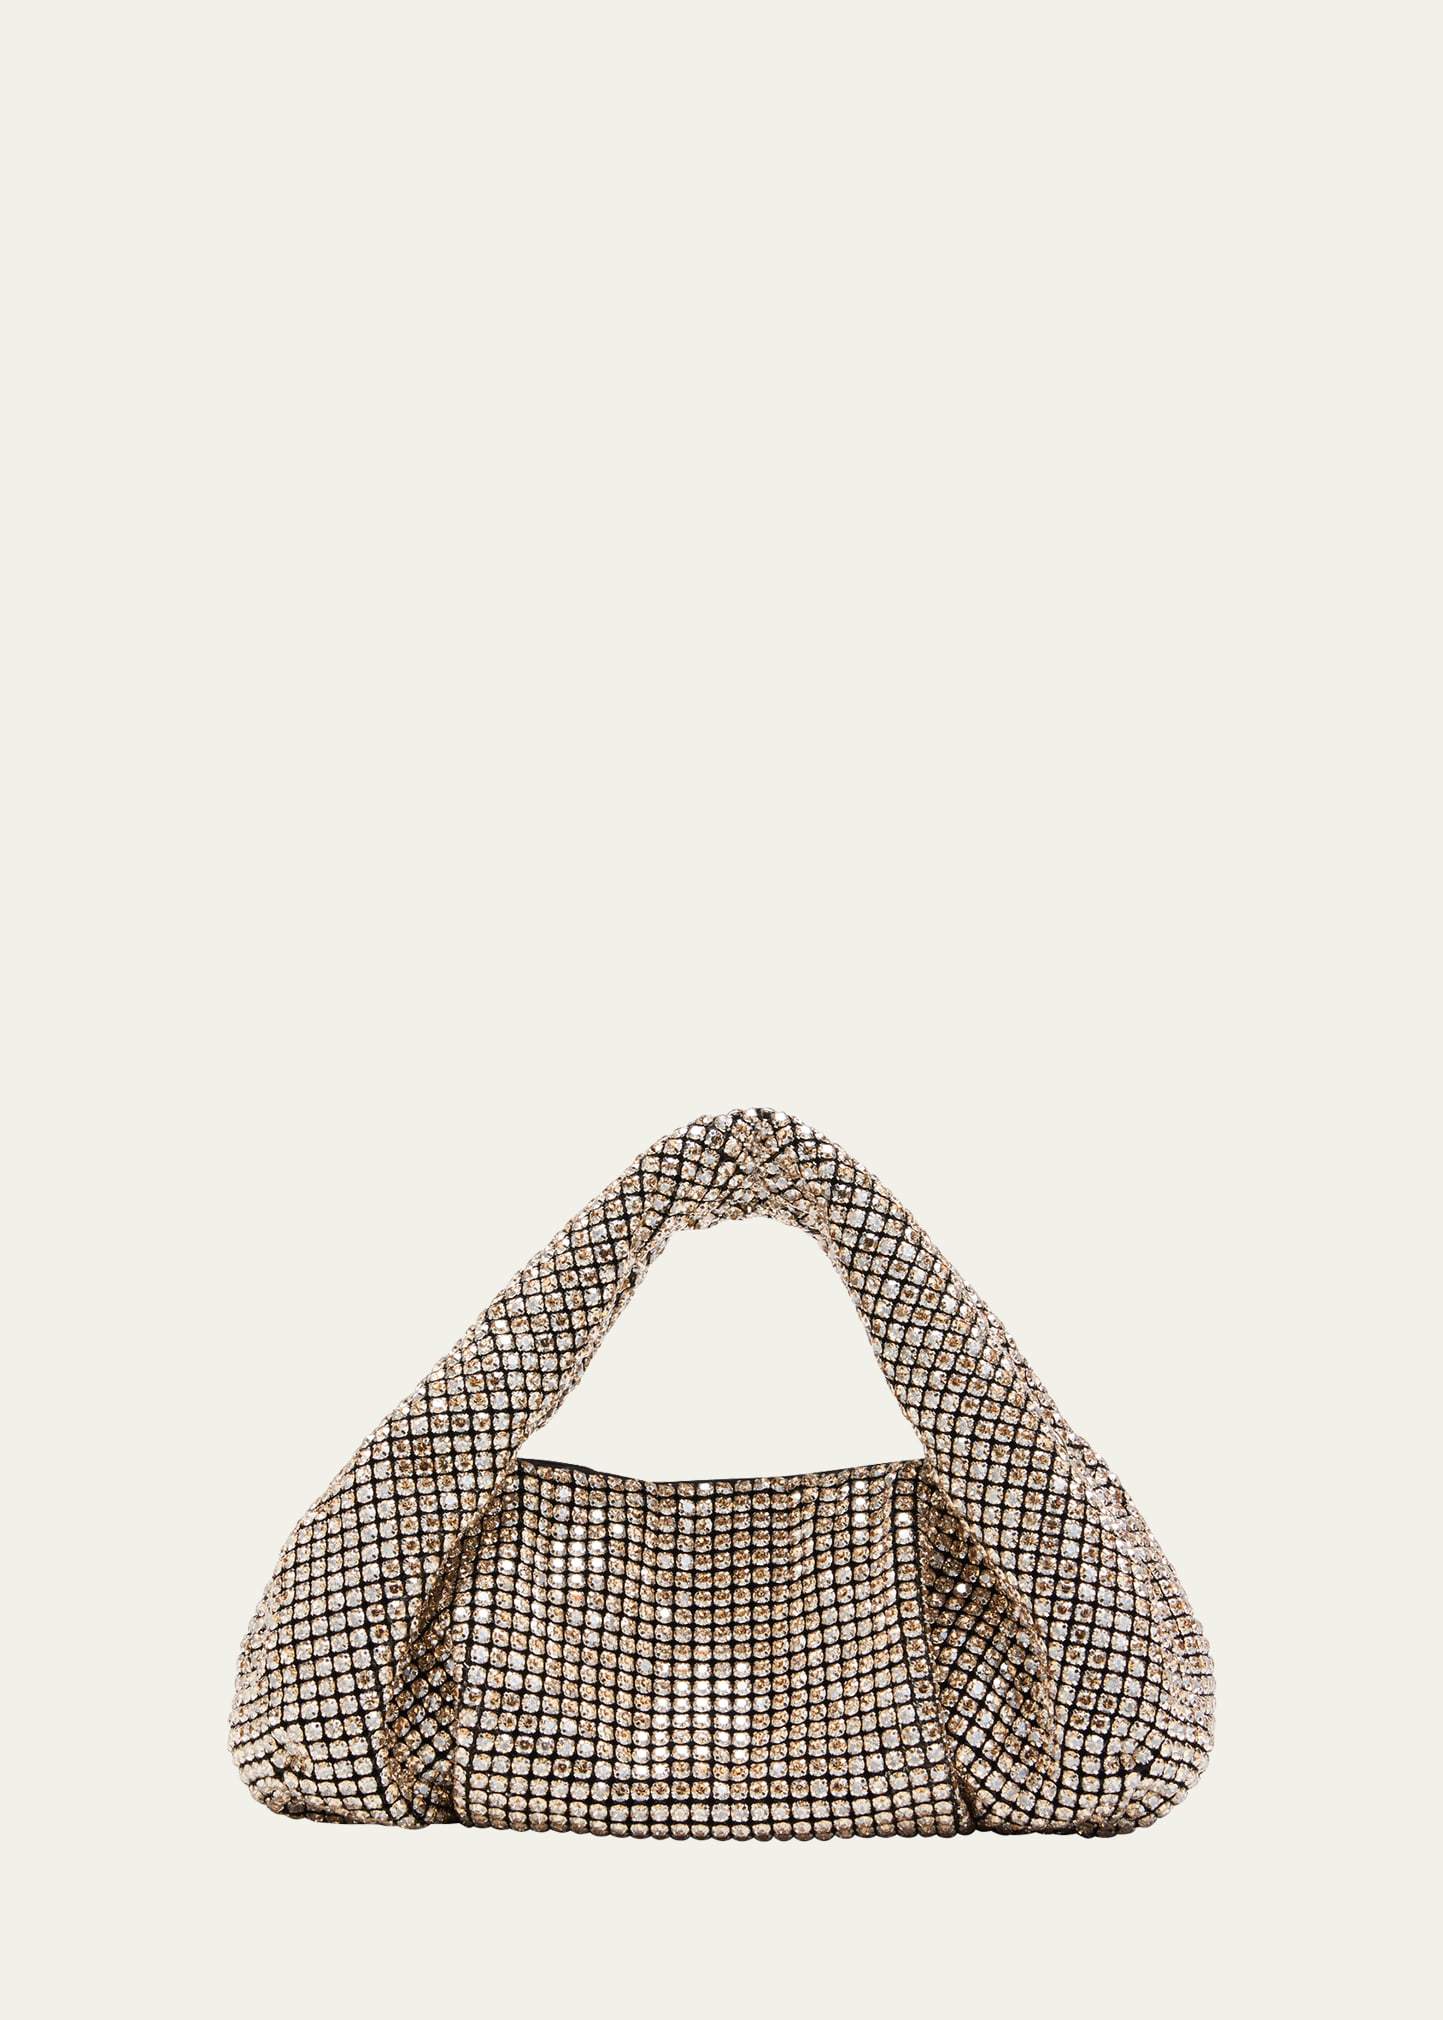 The Moda Mini Shine Crystal Top-Handle Bag